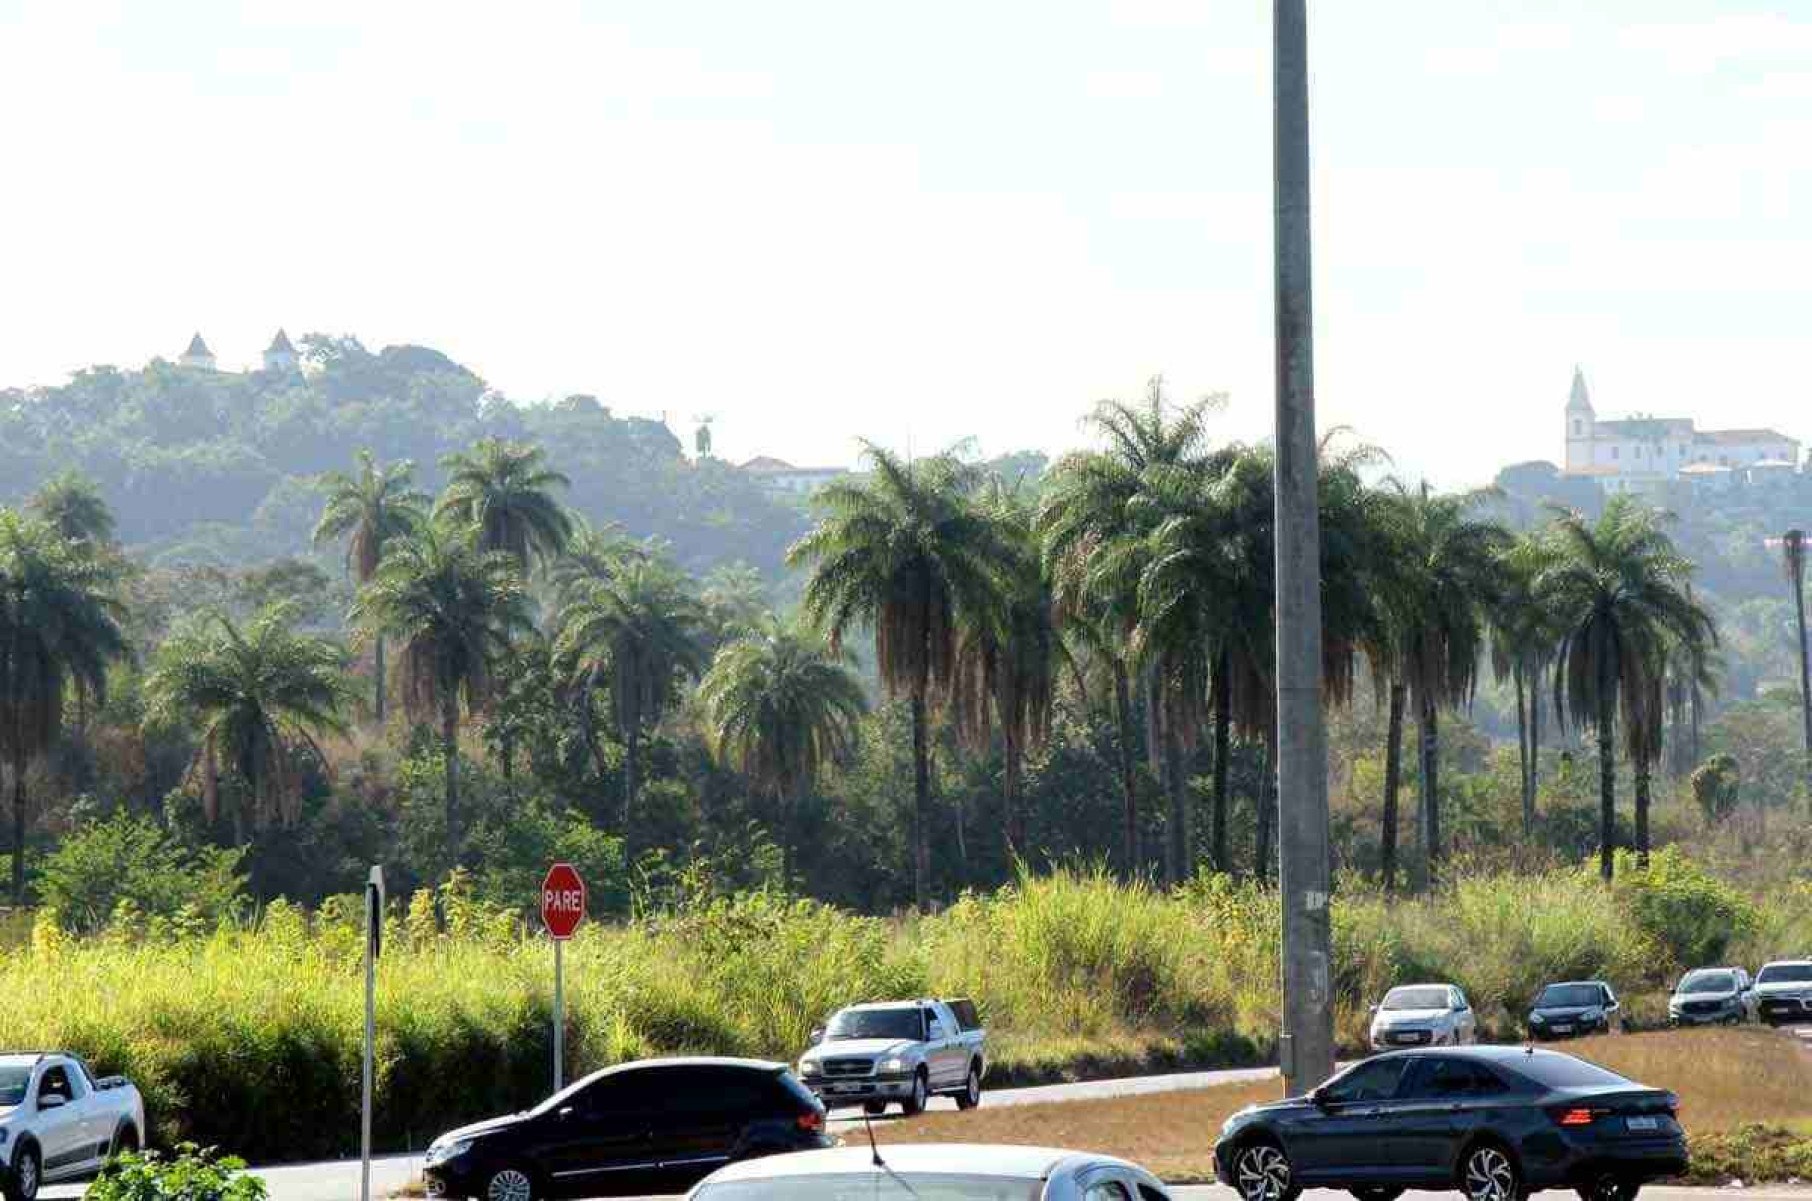 consideradas  patrimônio cultural da cidade, palmeiras  também estariam ameaçadas